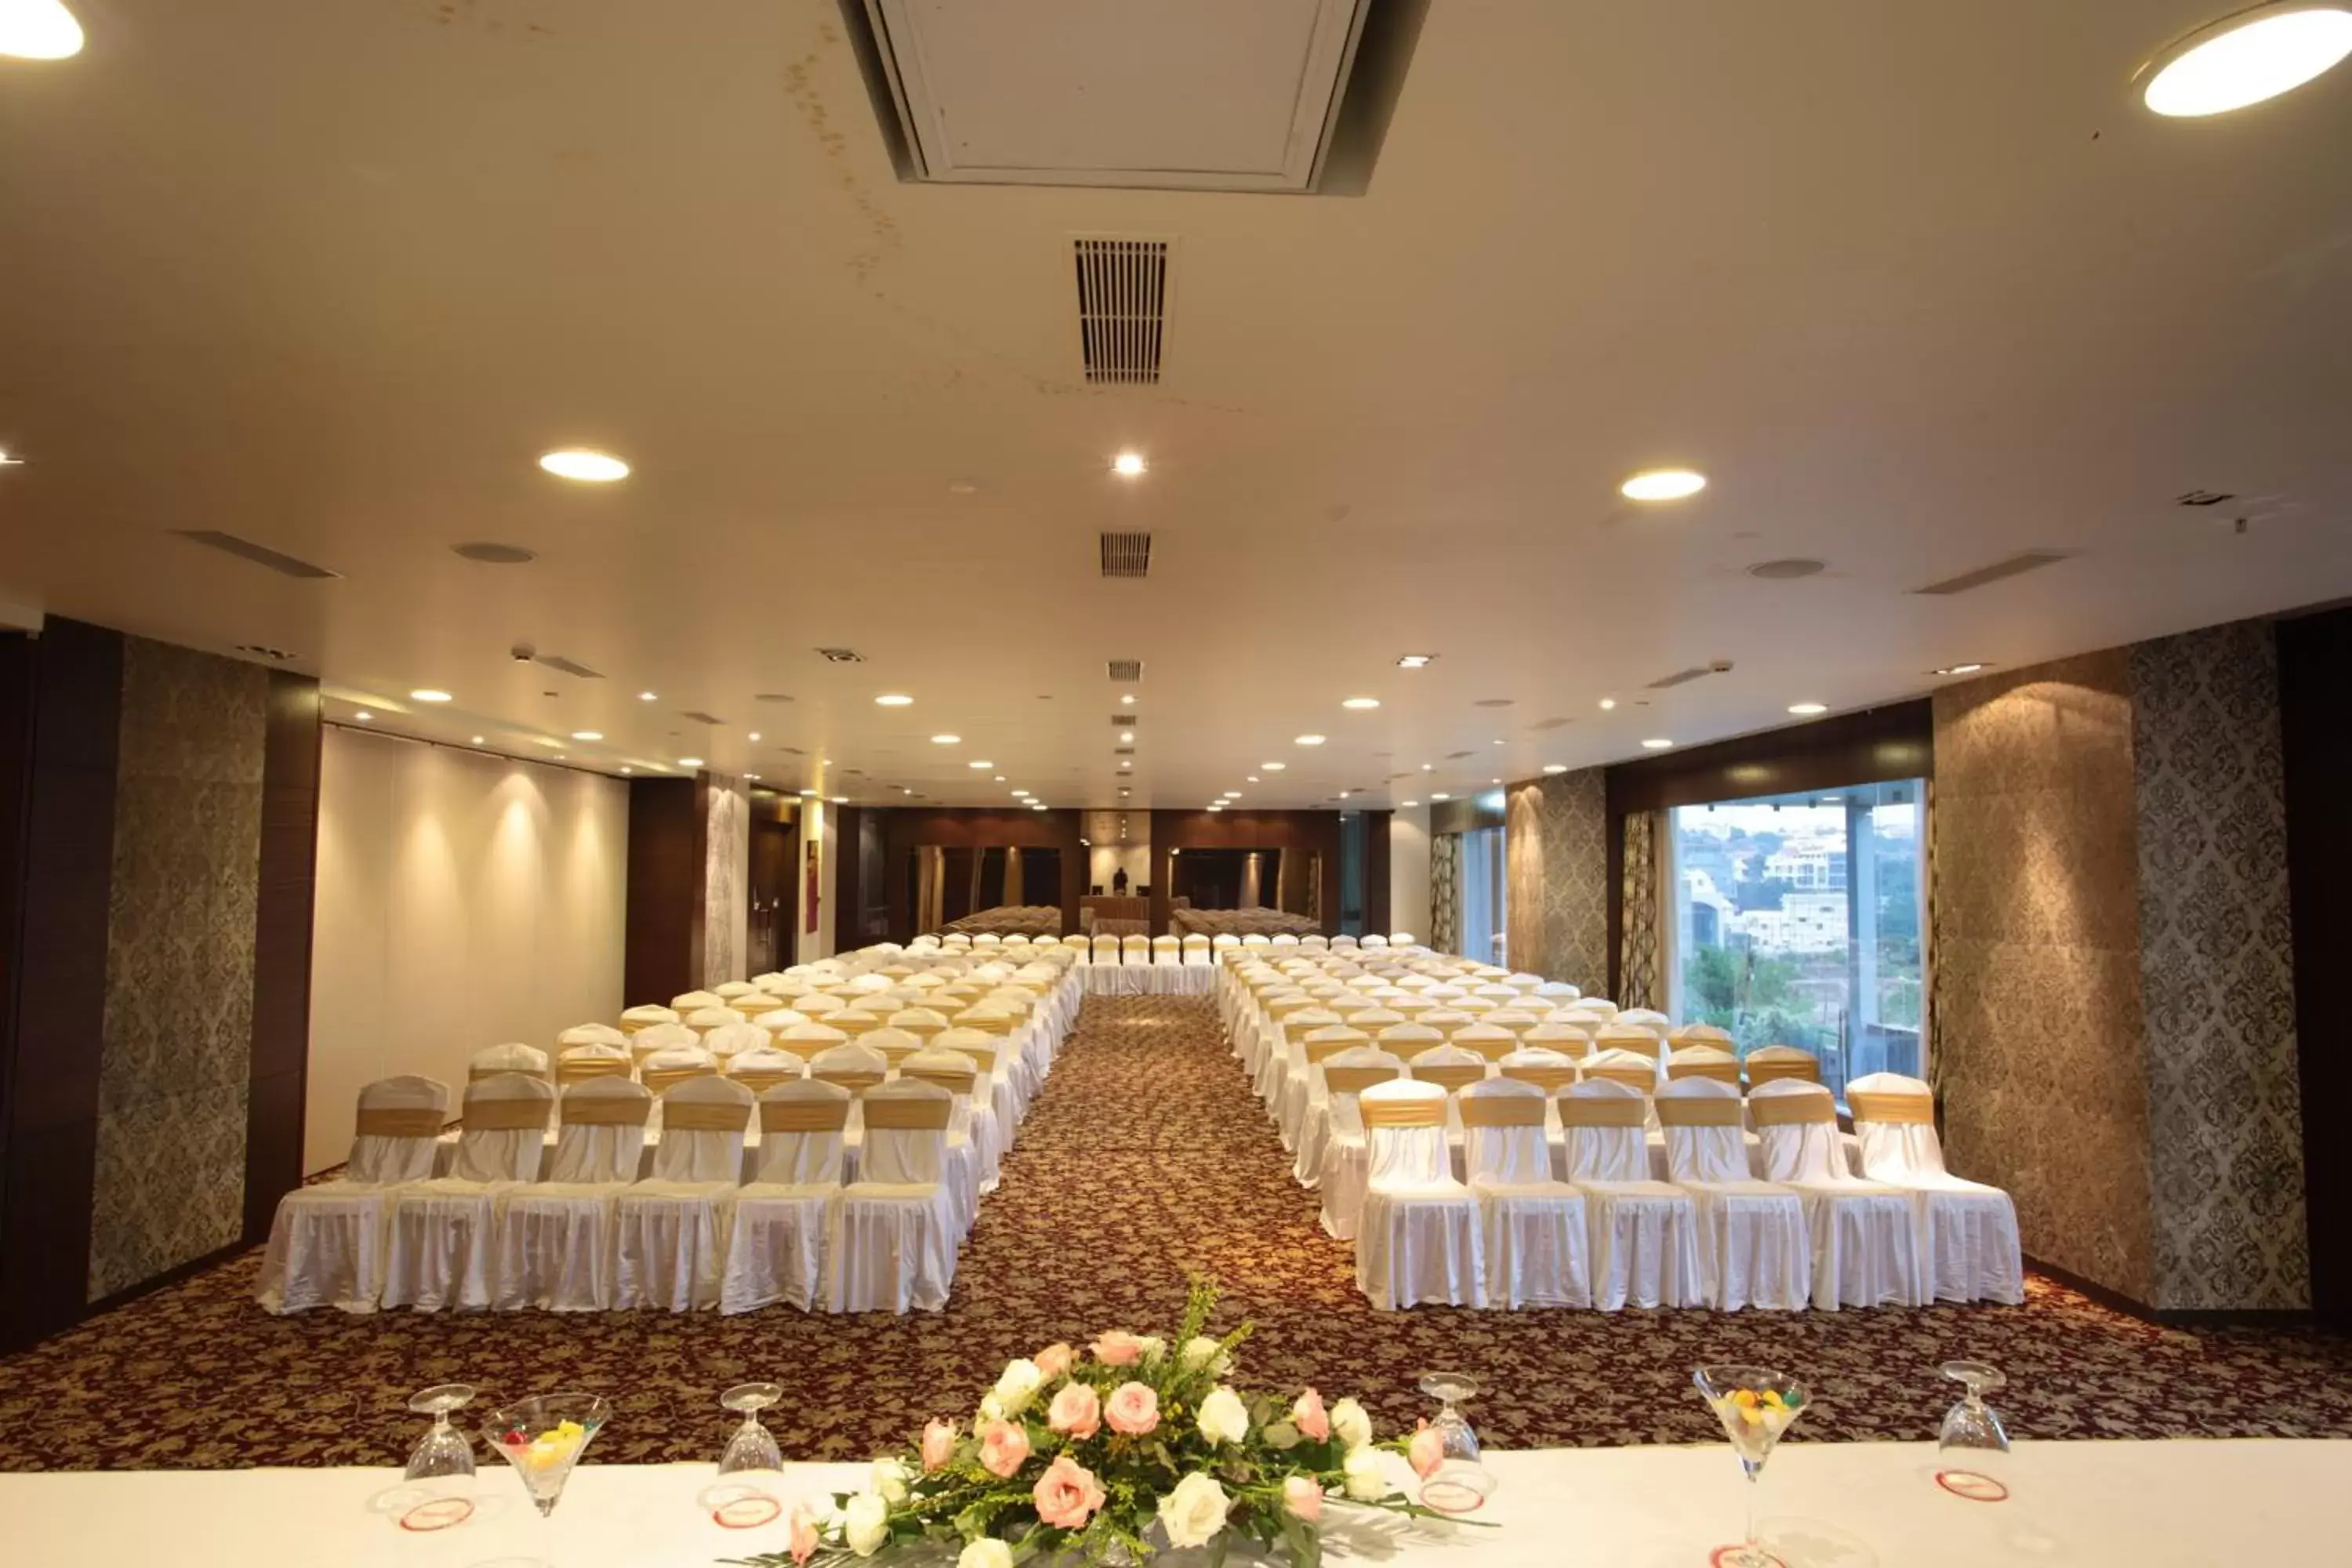 Banquet/Function facilities, Banquet Facilities in Daspalla Hyderabad